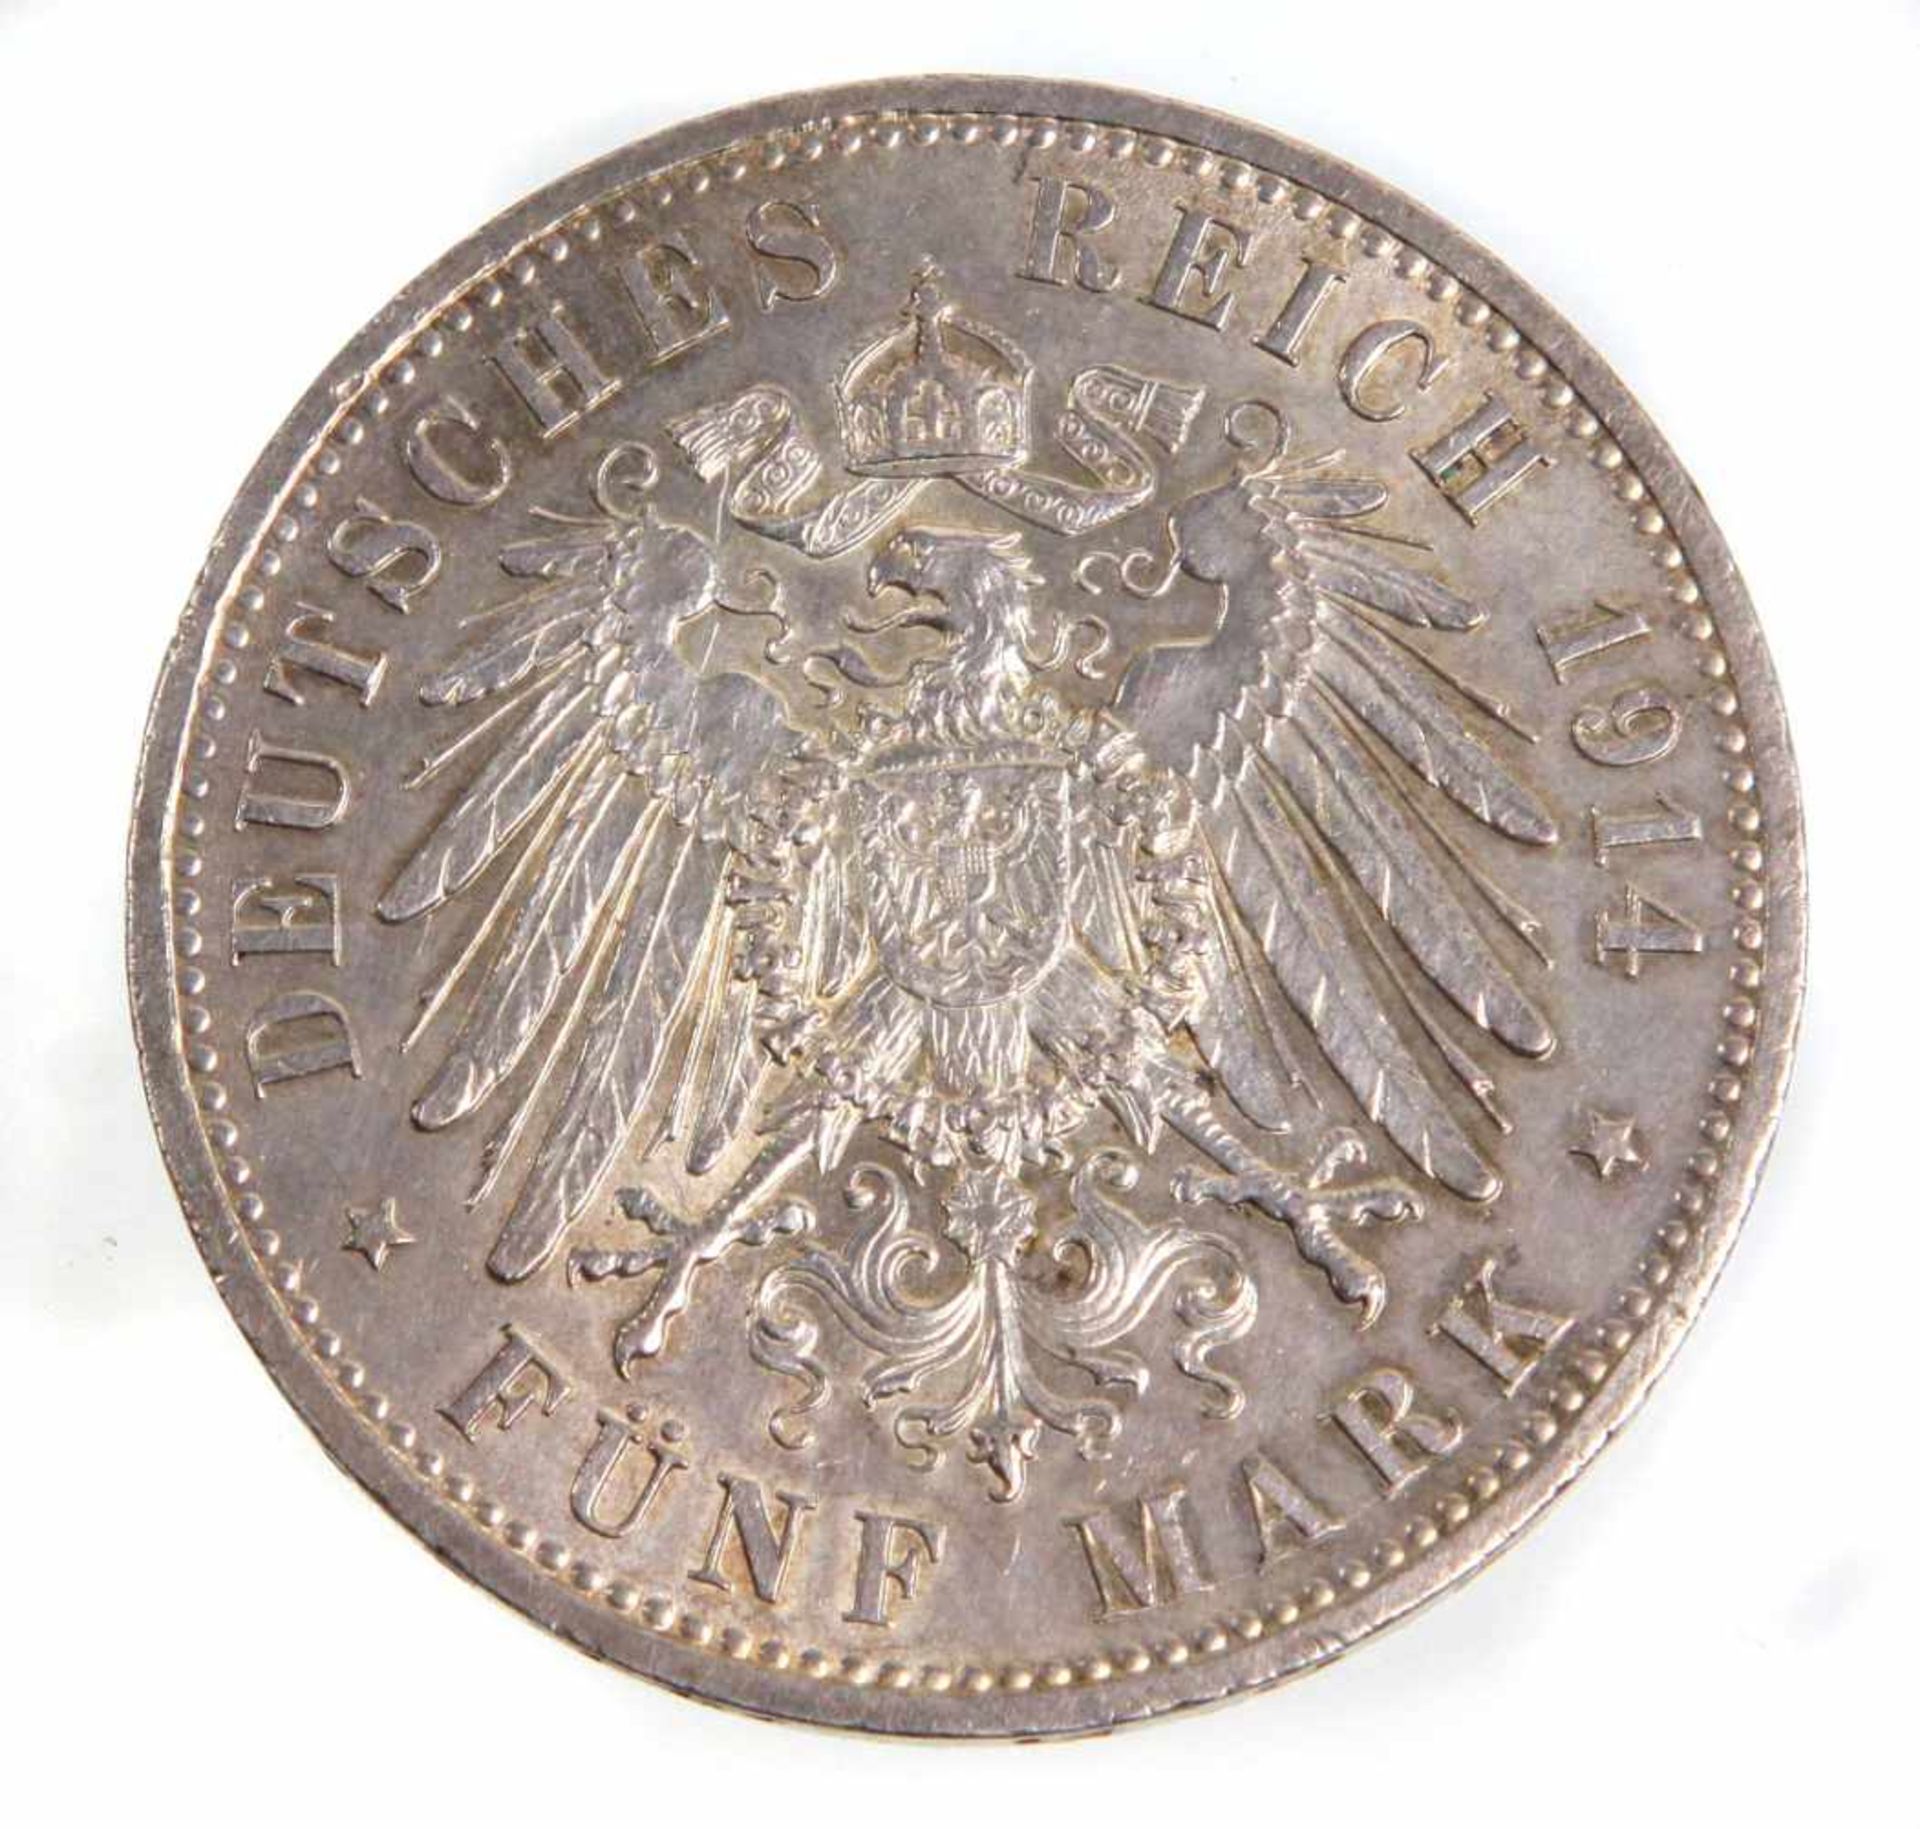 5 Mark Wilhelm II Preussen 1914 ASilbermünze Fünf Mark Deutsches Reich 1914, so um gekrönten - Bild 2 aus 2